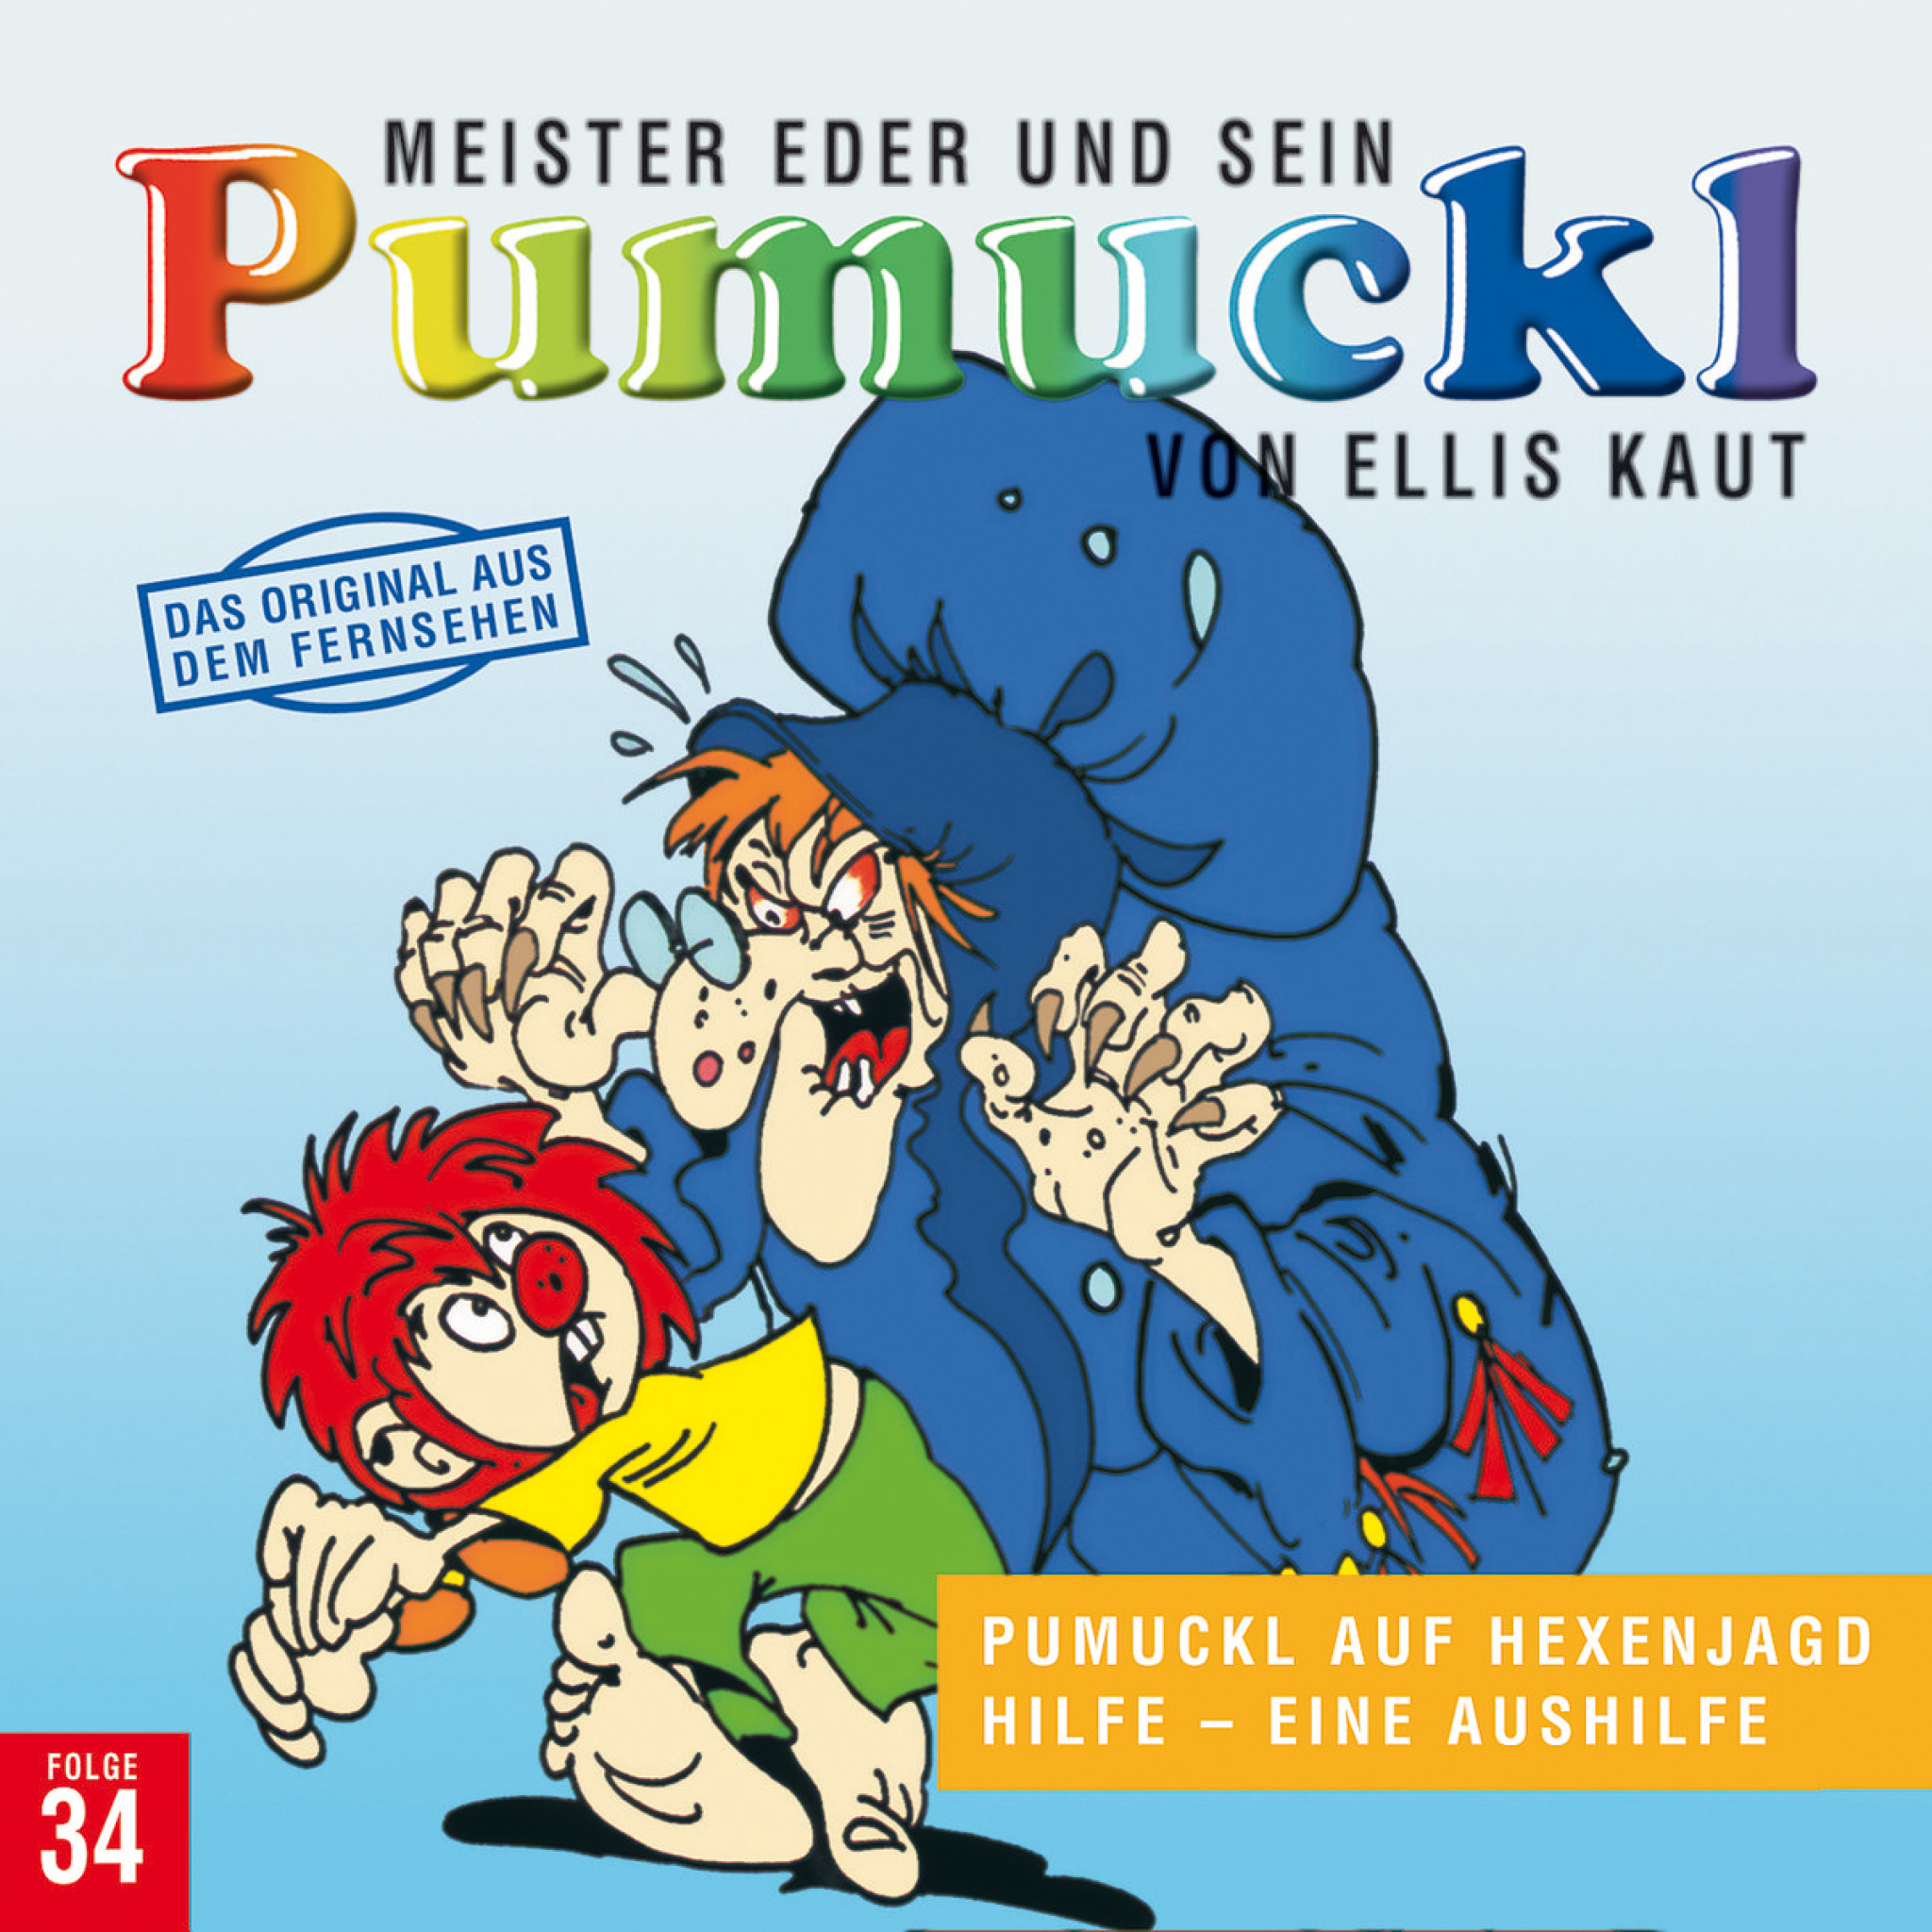 Meister Eder und sein Pumuckl, Folge 34